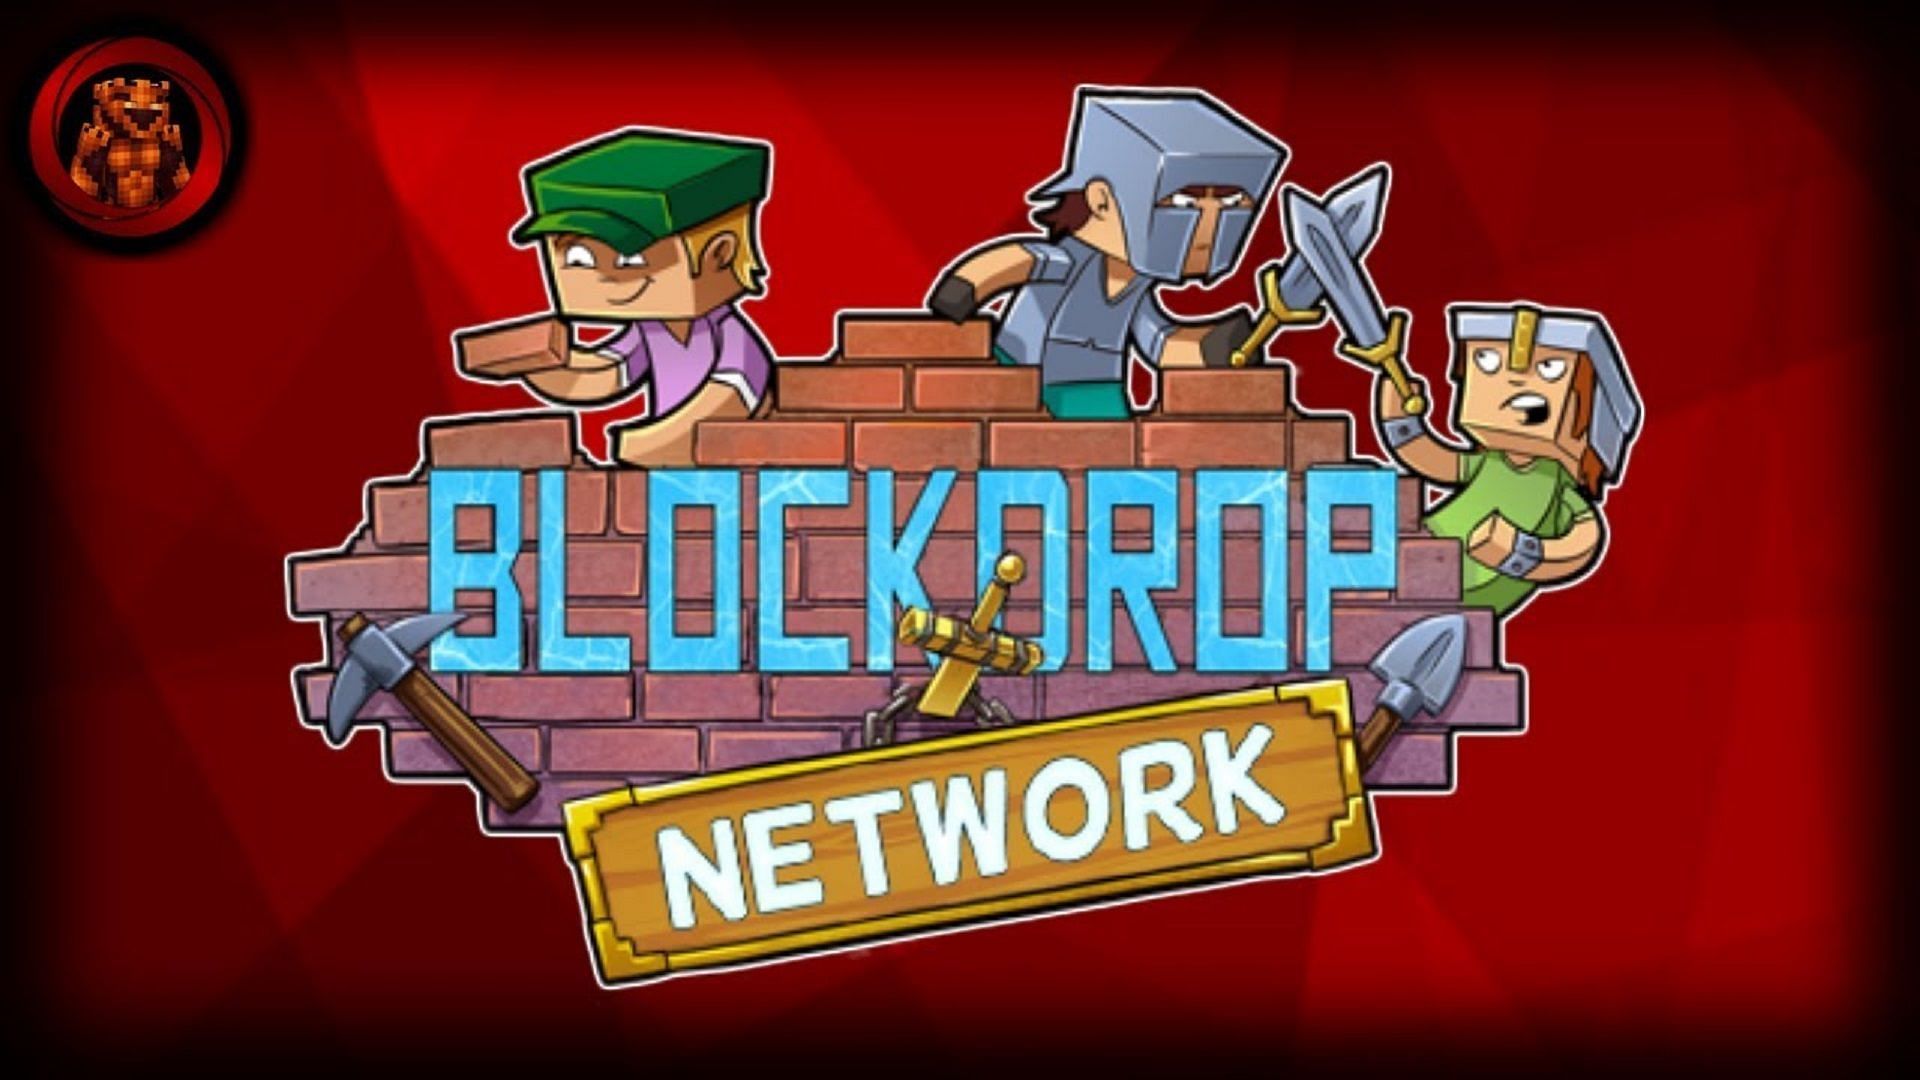 Blockdrop Network Logo #039 (Image via AwesomeOverLord/YouTube)